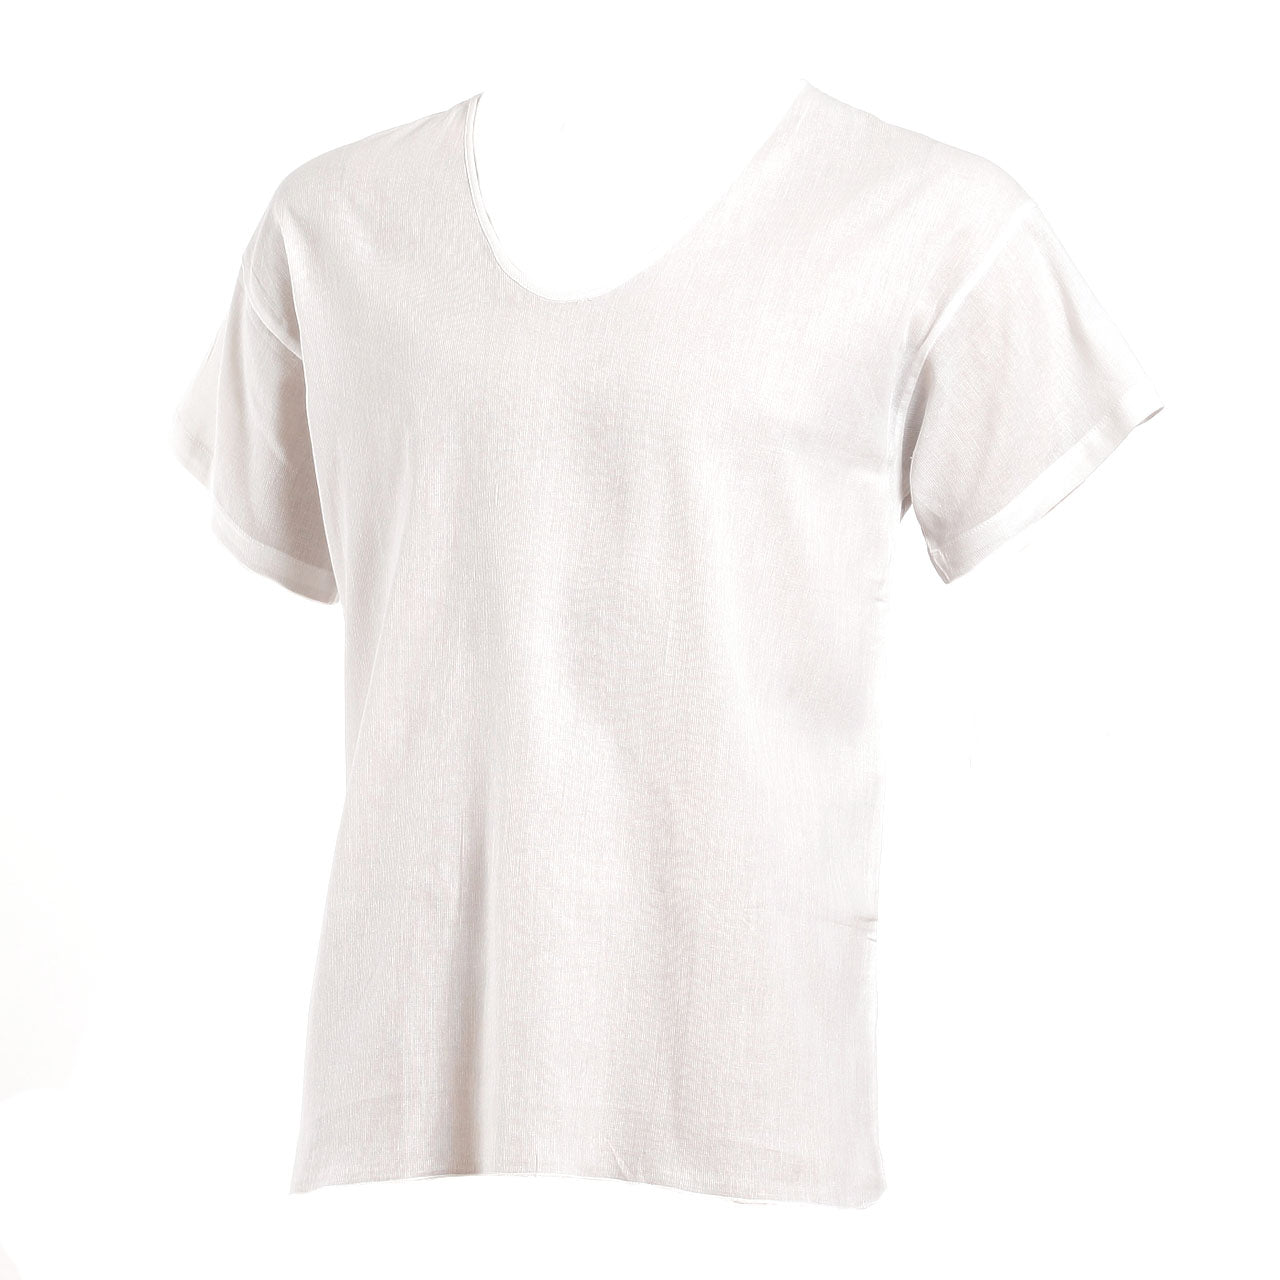 メンズ 肌着 綿 半袖 シャツ U首 2枚組 M～LL (下着 薄い 薄手 綿100% 夏 インナー インナーシャツ 白 無地) – スクログ